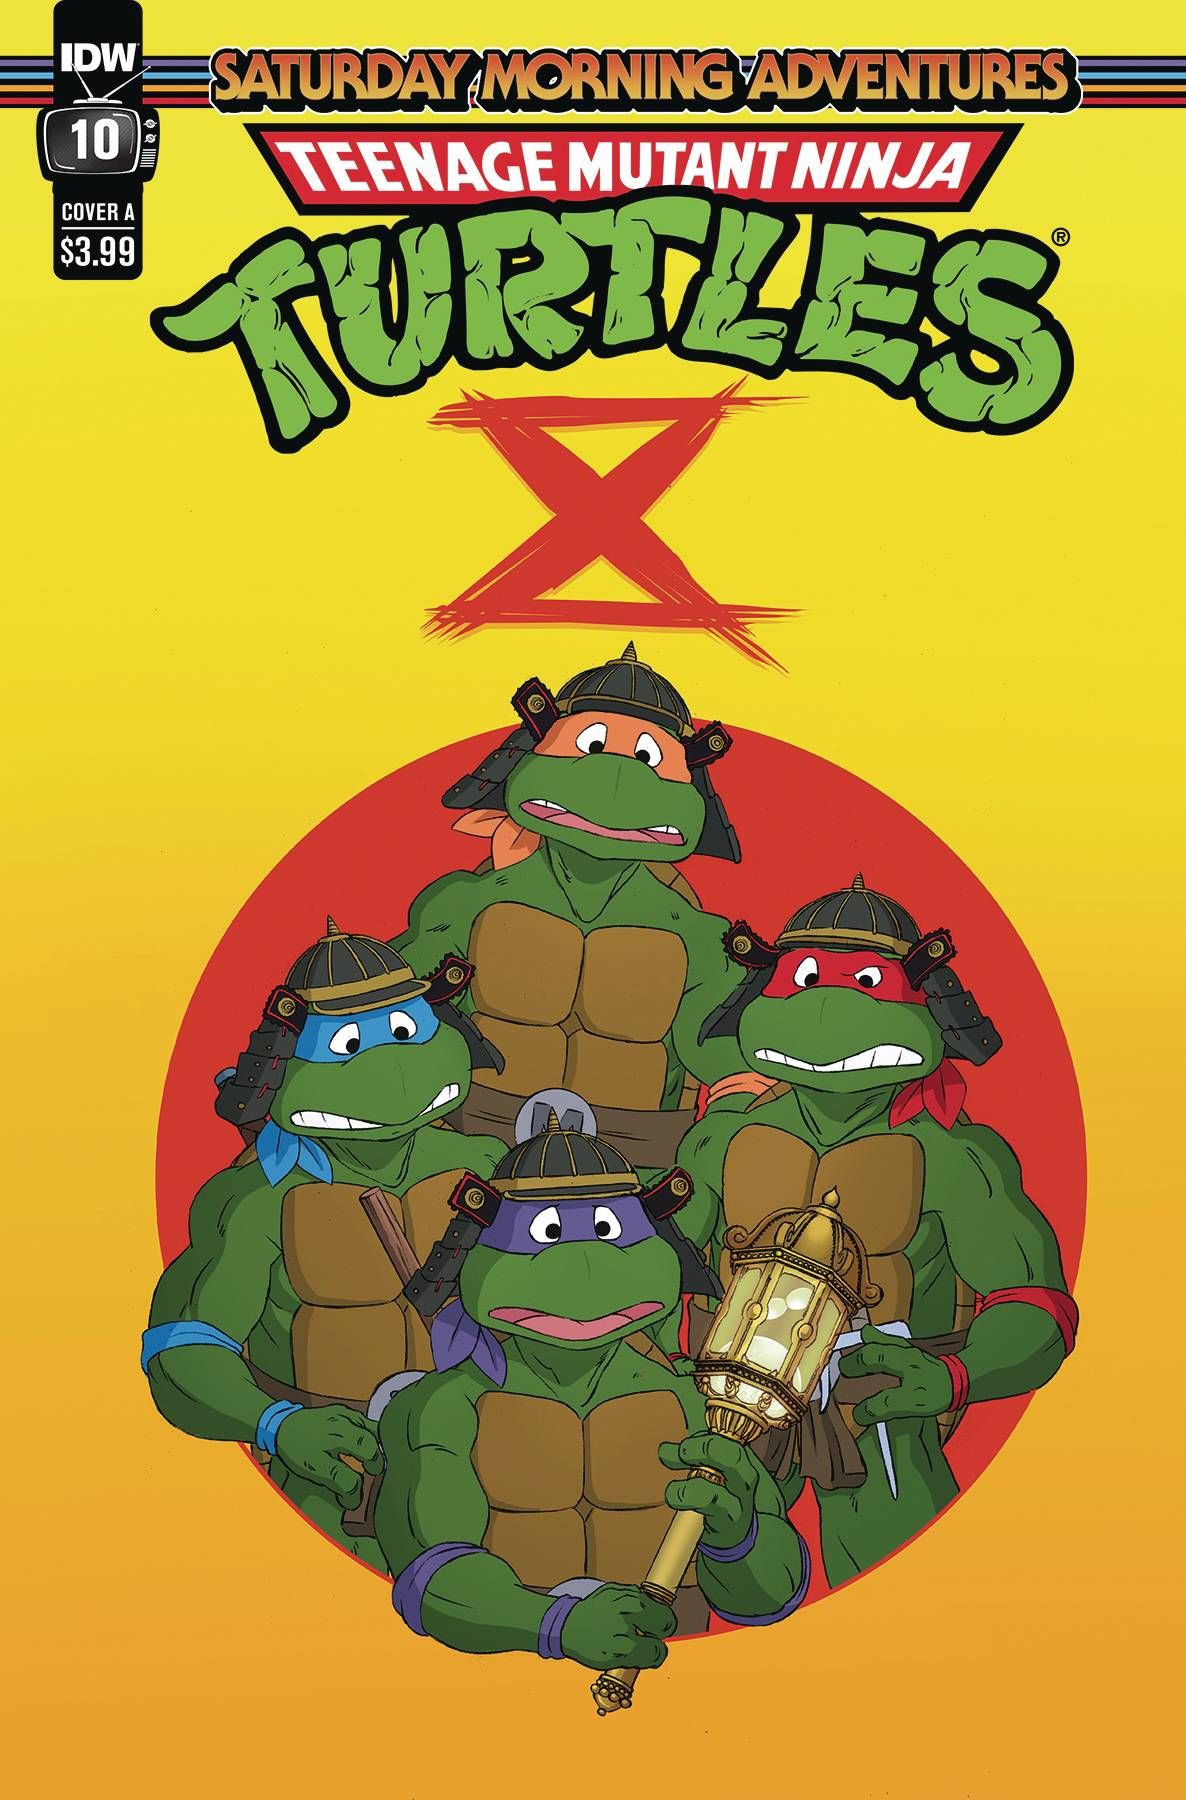 Teenage Mutant Ninja Turtles: Saturday Morning Adventures #10 Comic